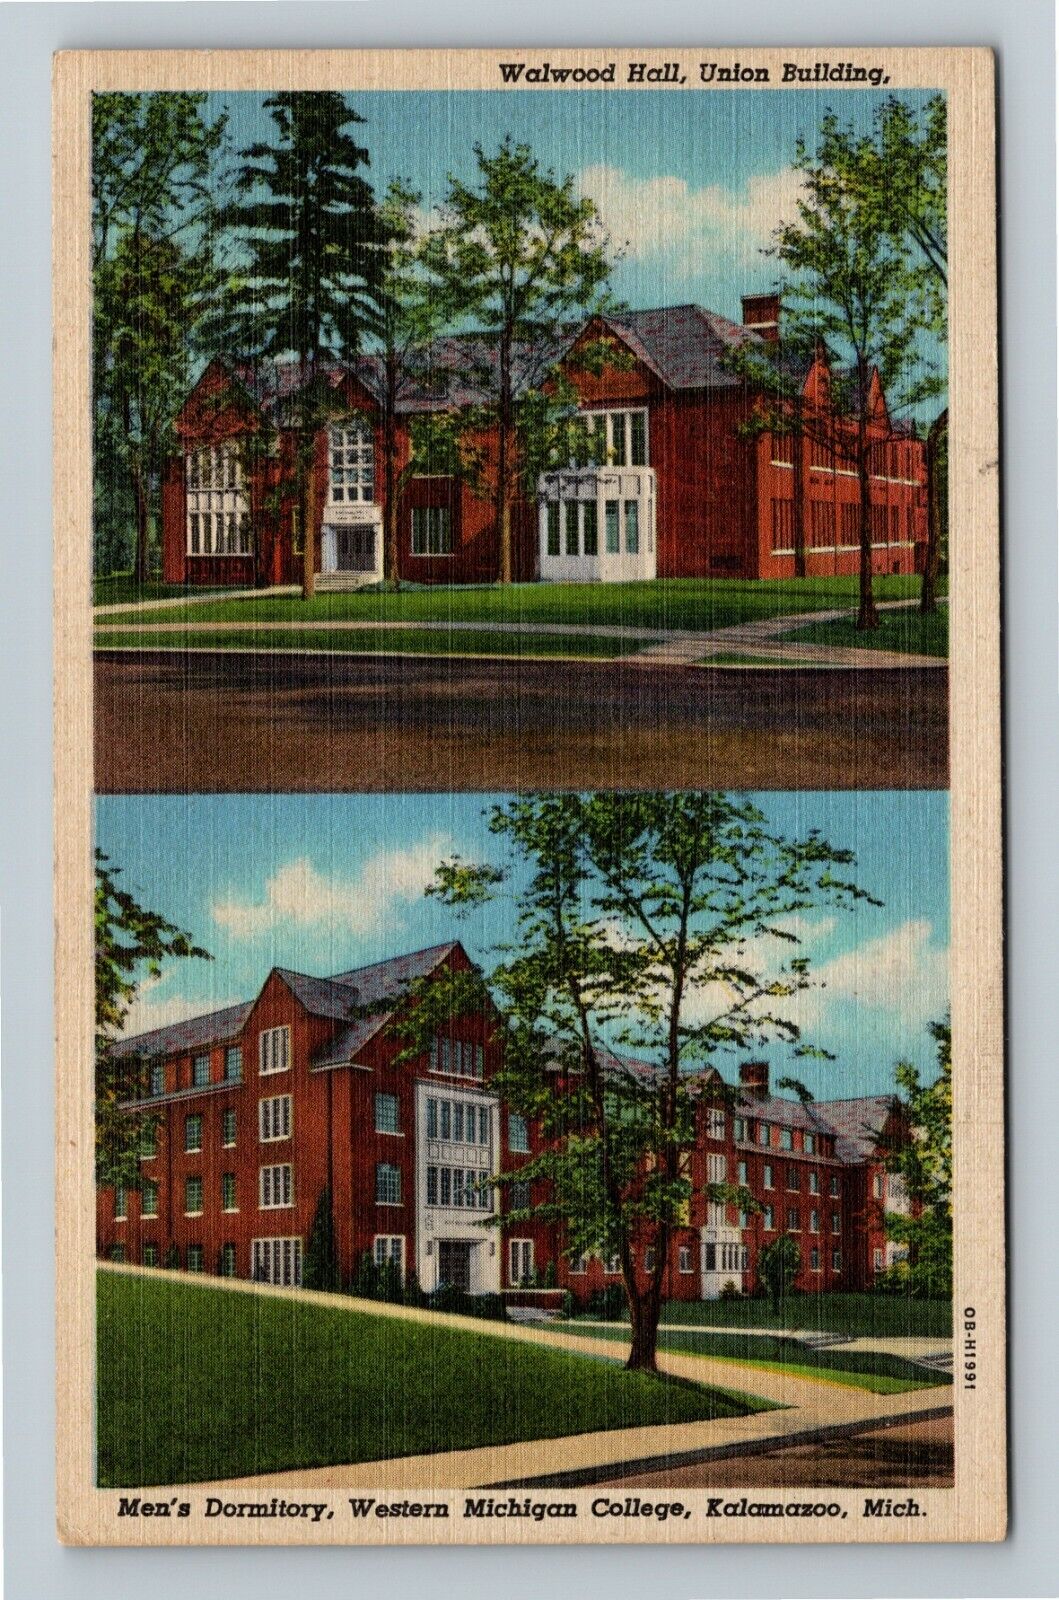 Kalamazoo MI, Western Michigan College Union, Walwood Hall Vintagec1947 Postcard